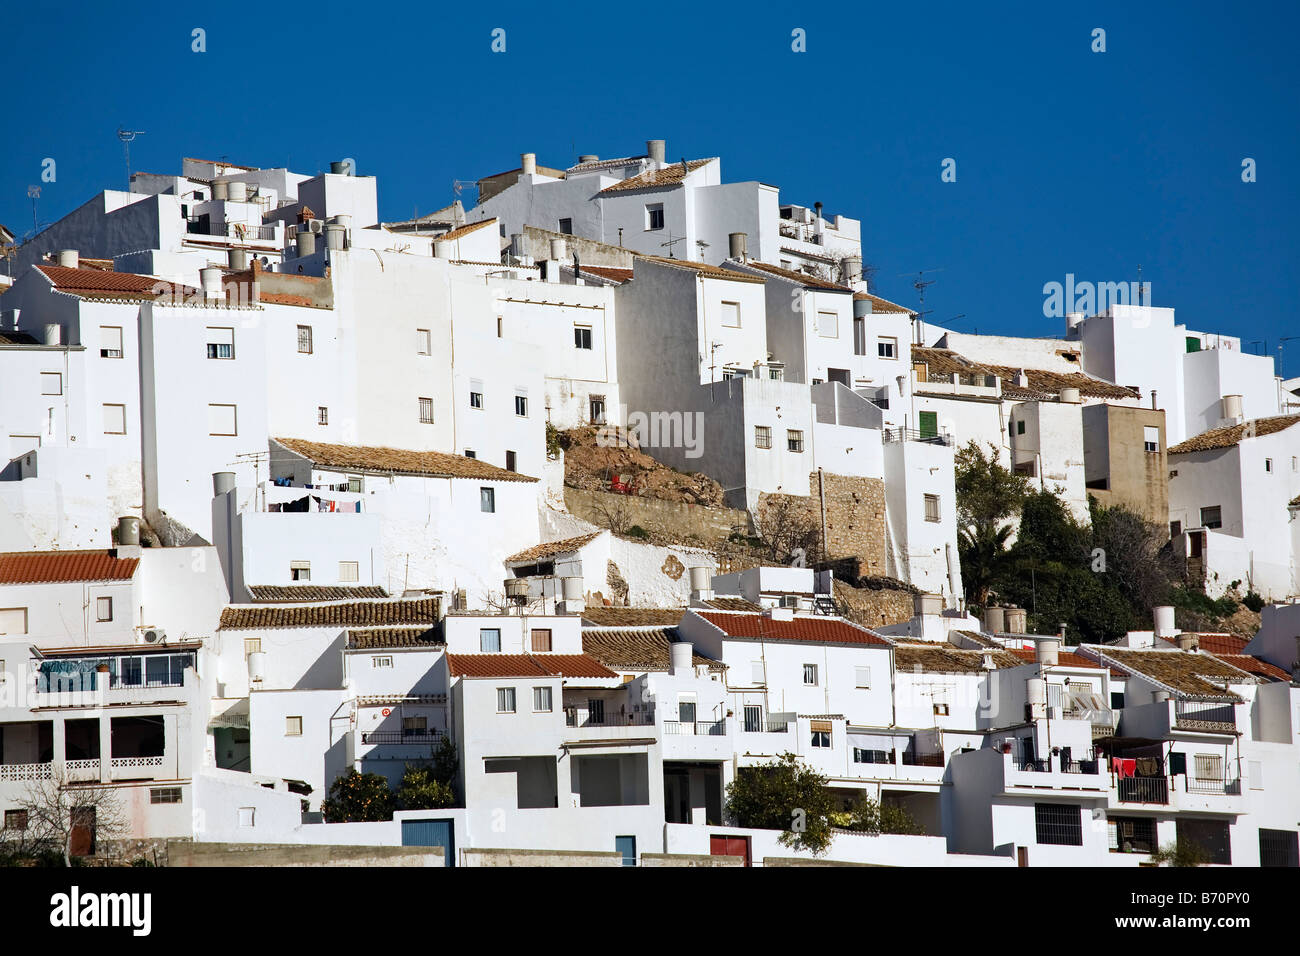 pueblo blanco de olvera sevilla andalucia españa the white town of Olvera sevilla andalusia spain Stock Photo